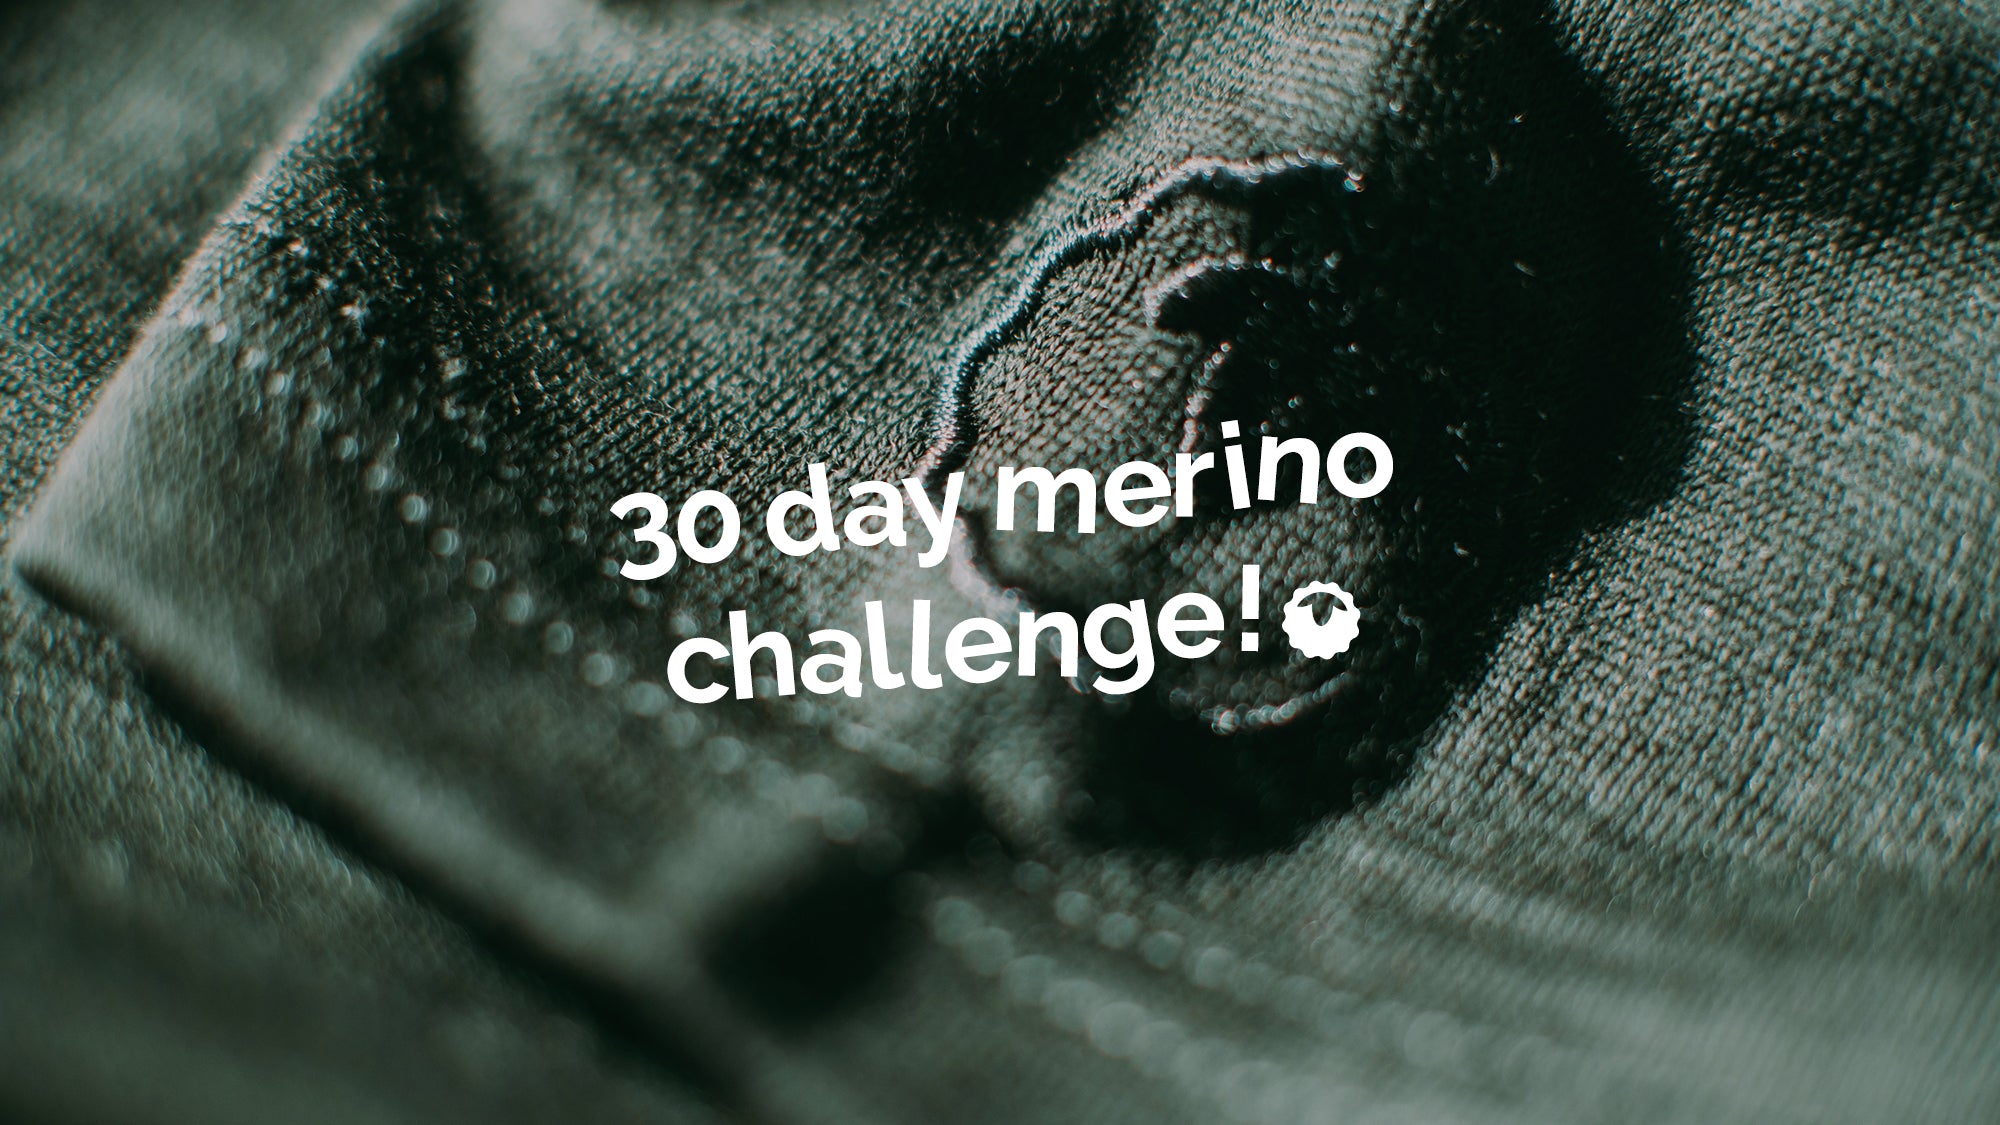 30 day merino challenge